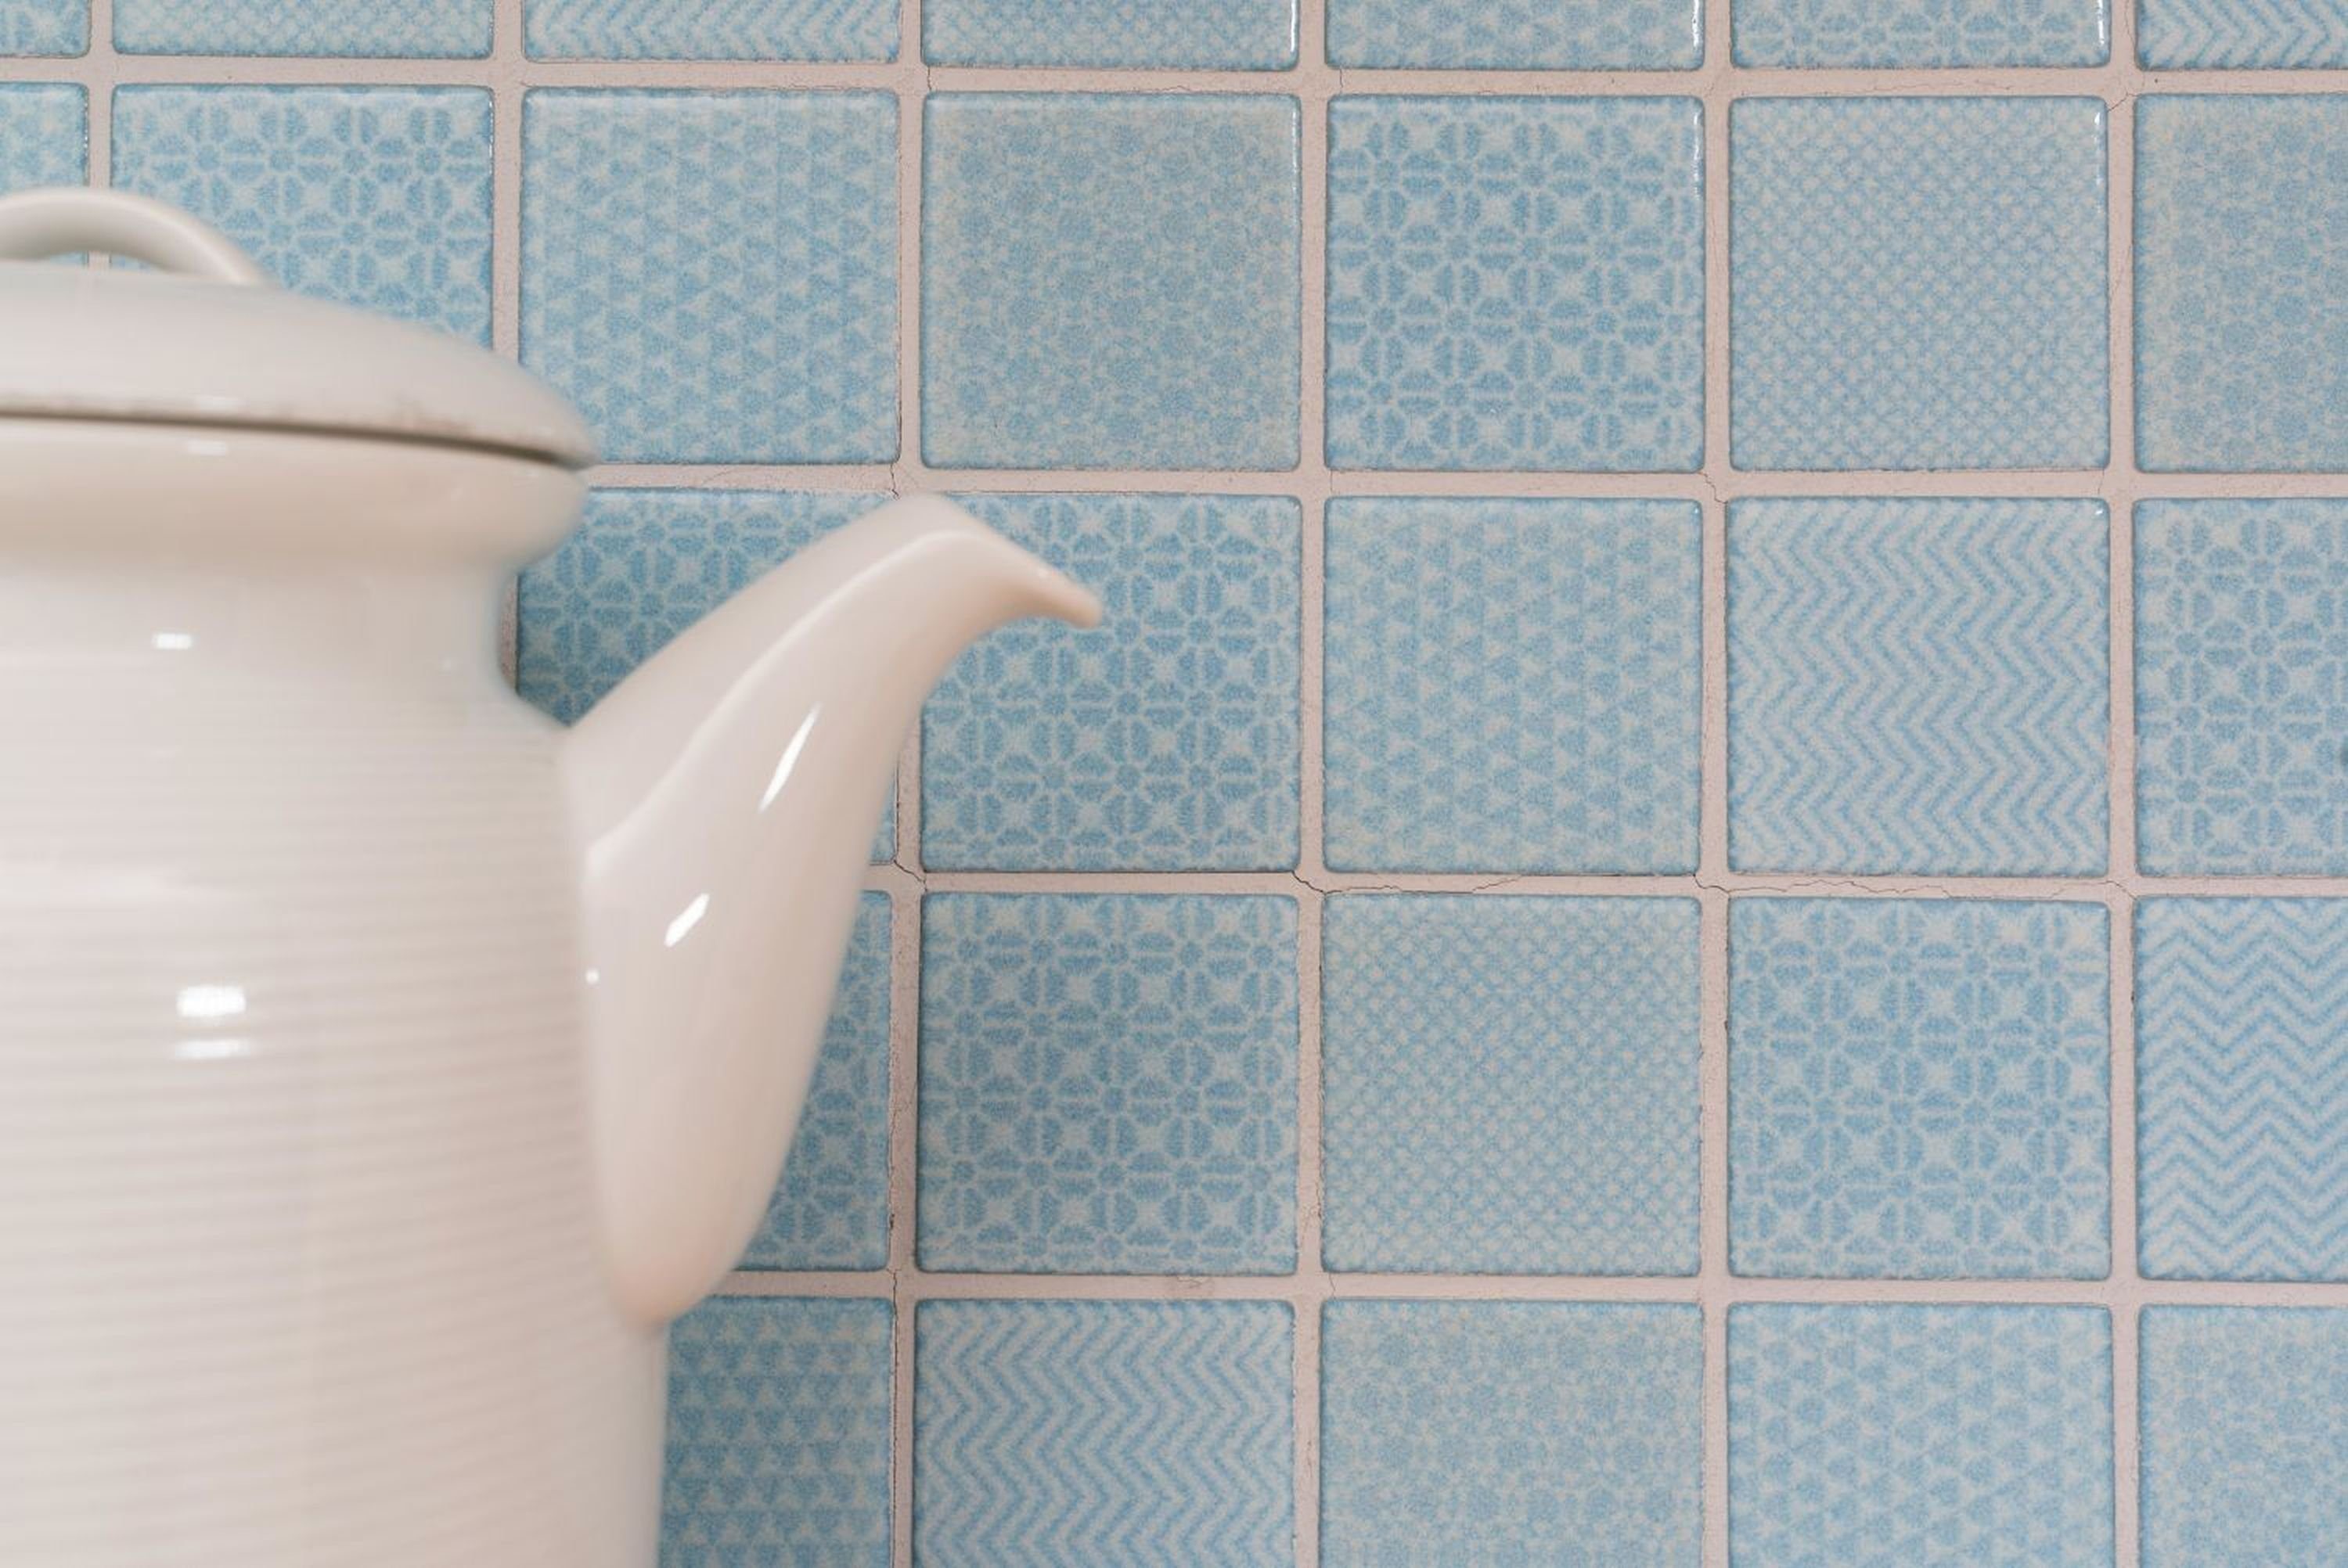 hellblau Mosaik Pool Mosani BAD Fliesenspiegel Küche Mosaikfliesen Fliese Keramik eisblau